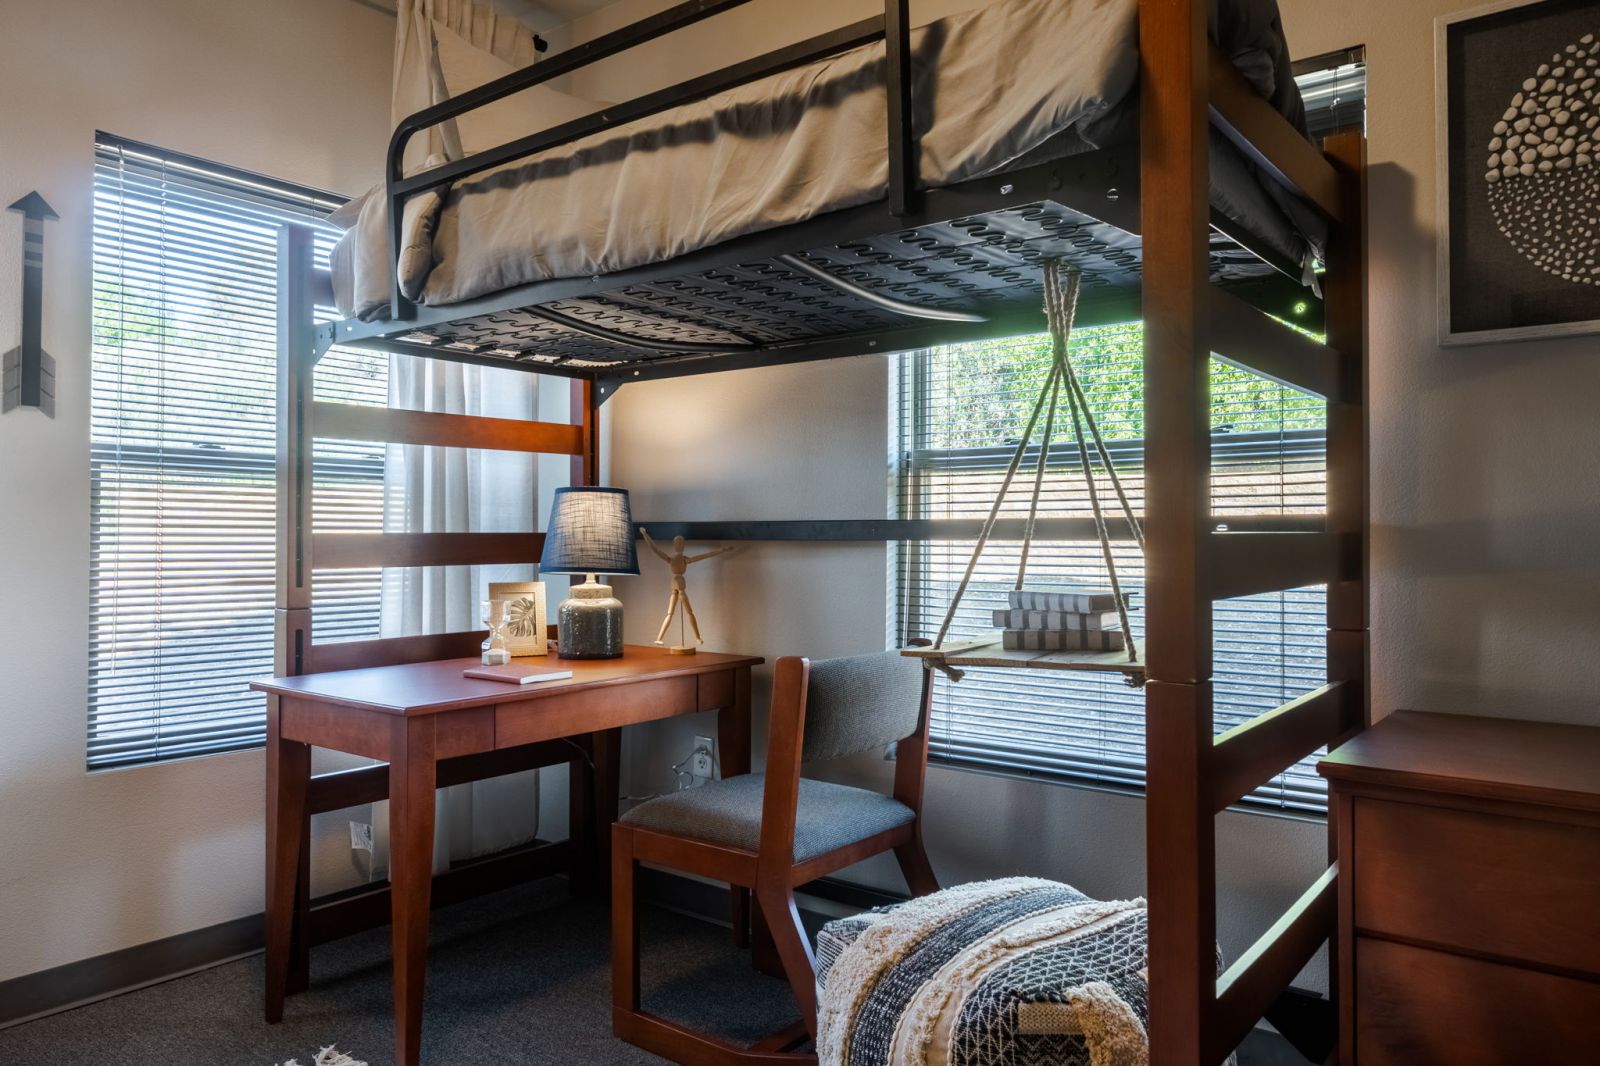 claremont collegiate off campus apartments claremont bunkbed with desk underneath